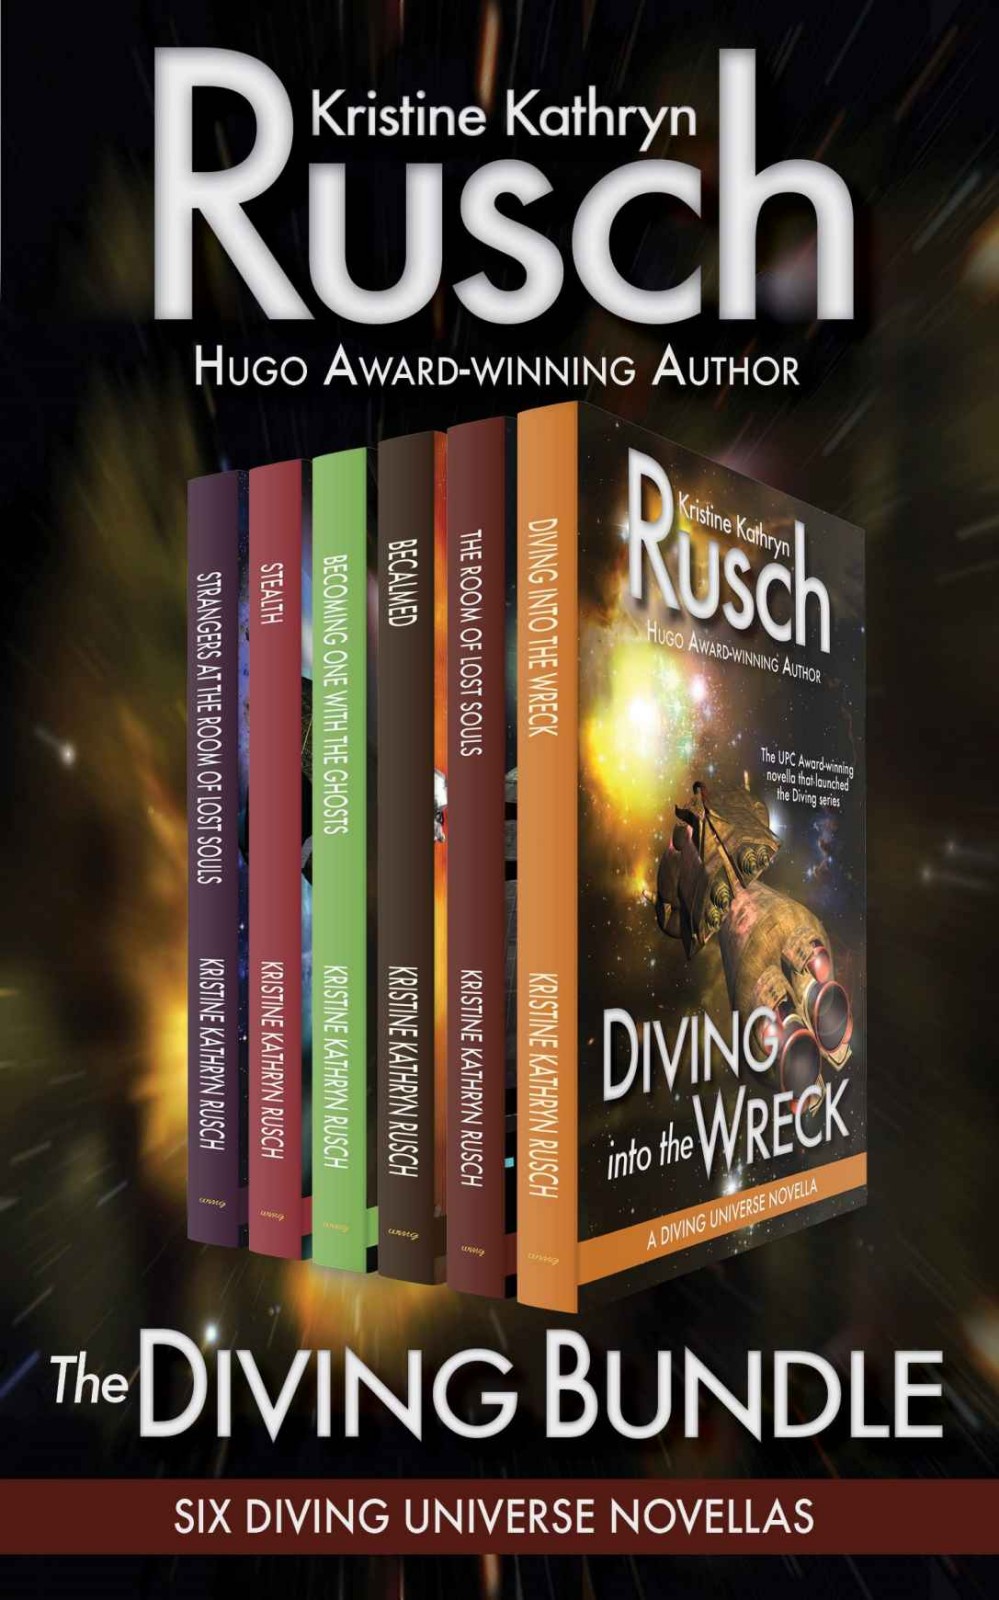 The Diving Bundle: Six Diving Universe Novellas